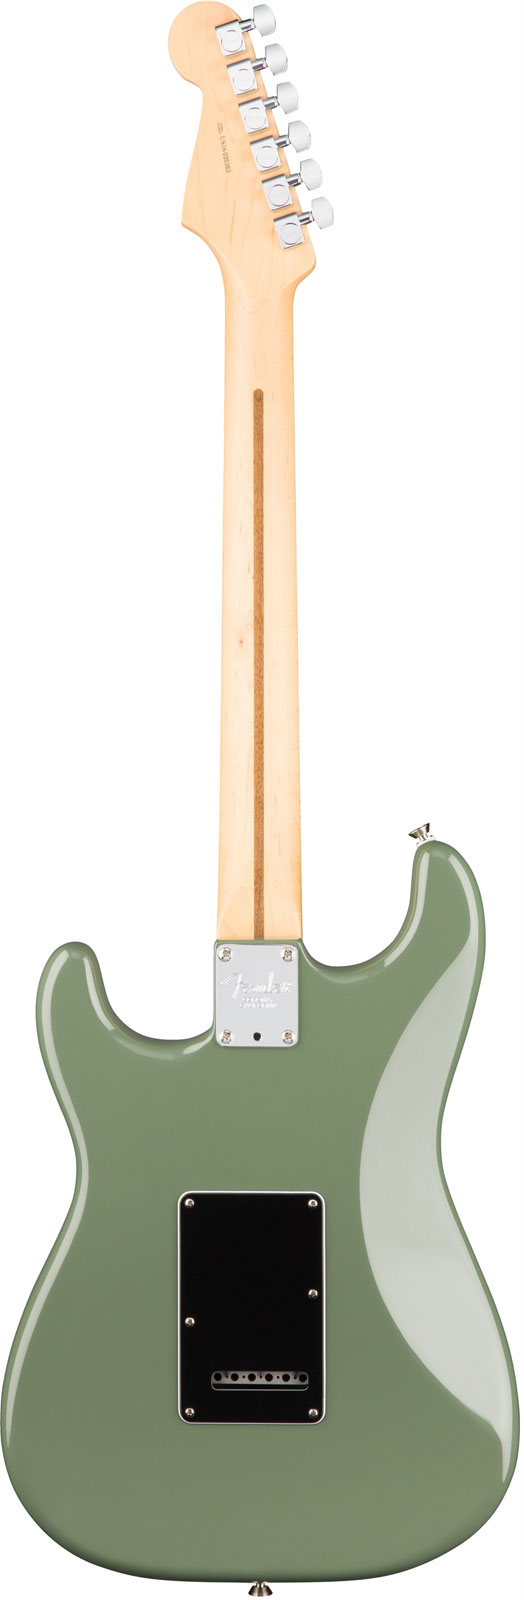 Fender Strat American Professional 2017 3s Usa Mn - Antique Olive - Str shape electric guitar - Variation 2